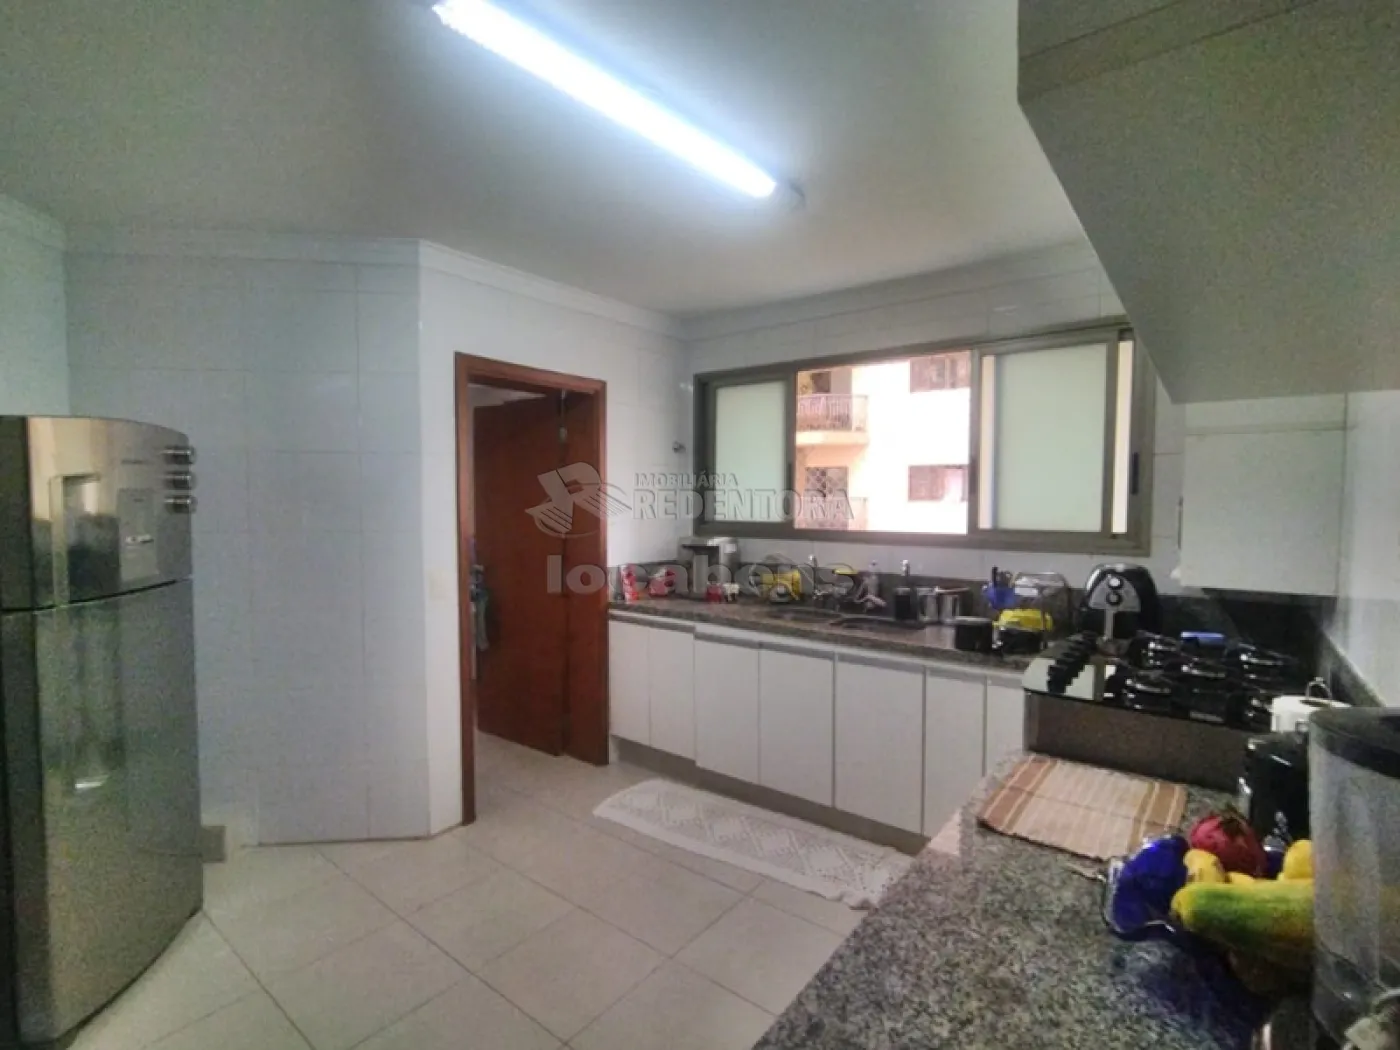 Comprar Apartamento / Padrão em São José do Rio Preto apenas R$ 600.000,00 - Foto 7